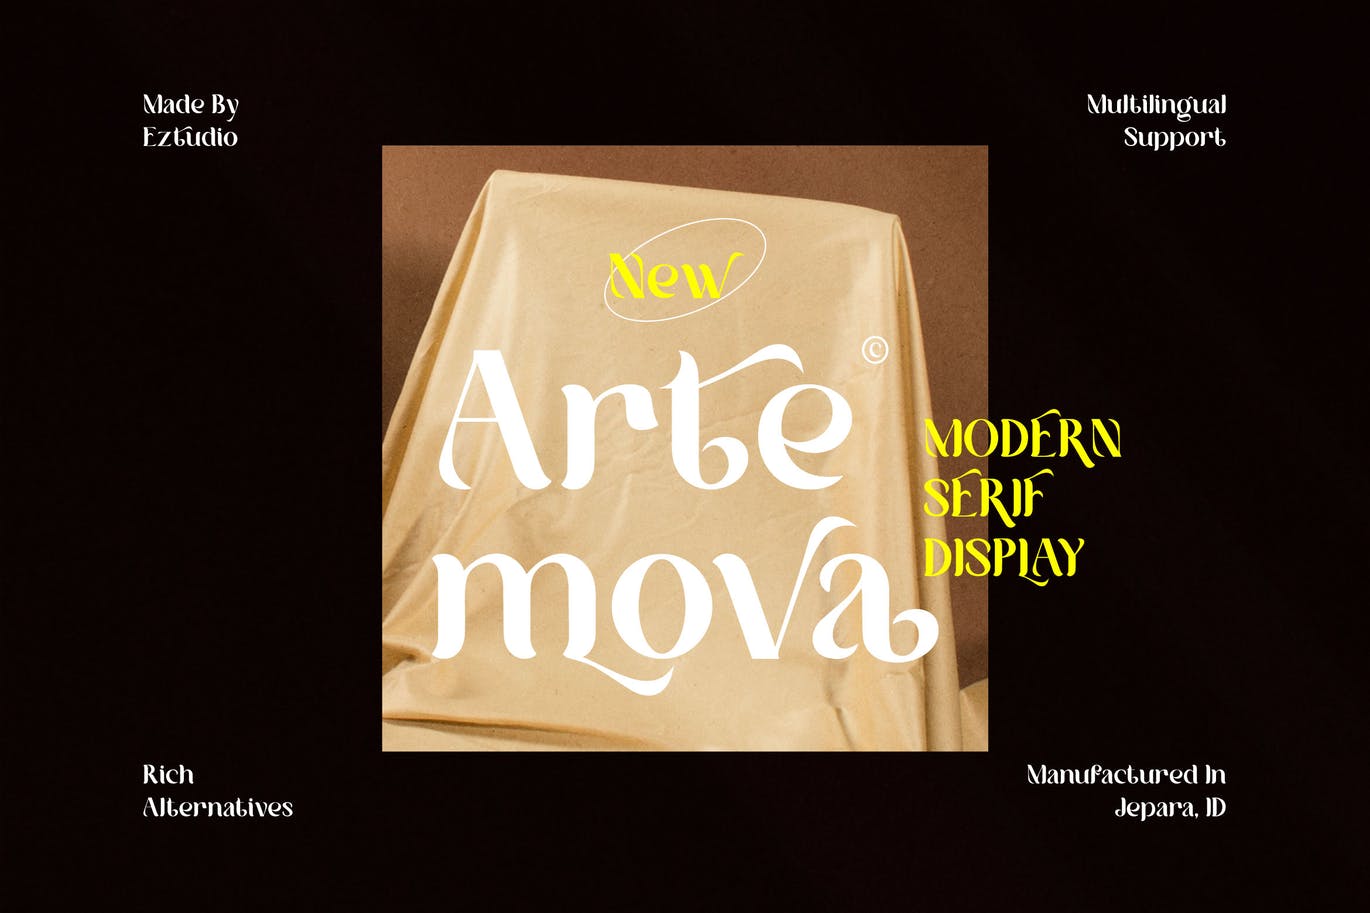 现代优雅的品牌海报杂志排版英文衬线字体 Modern Ser